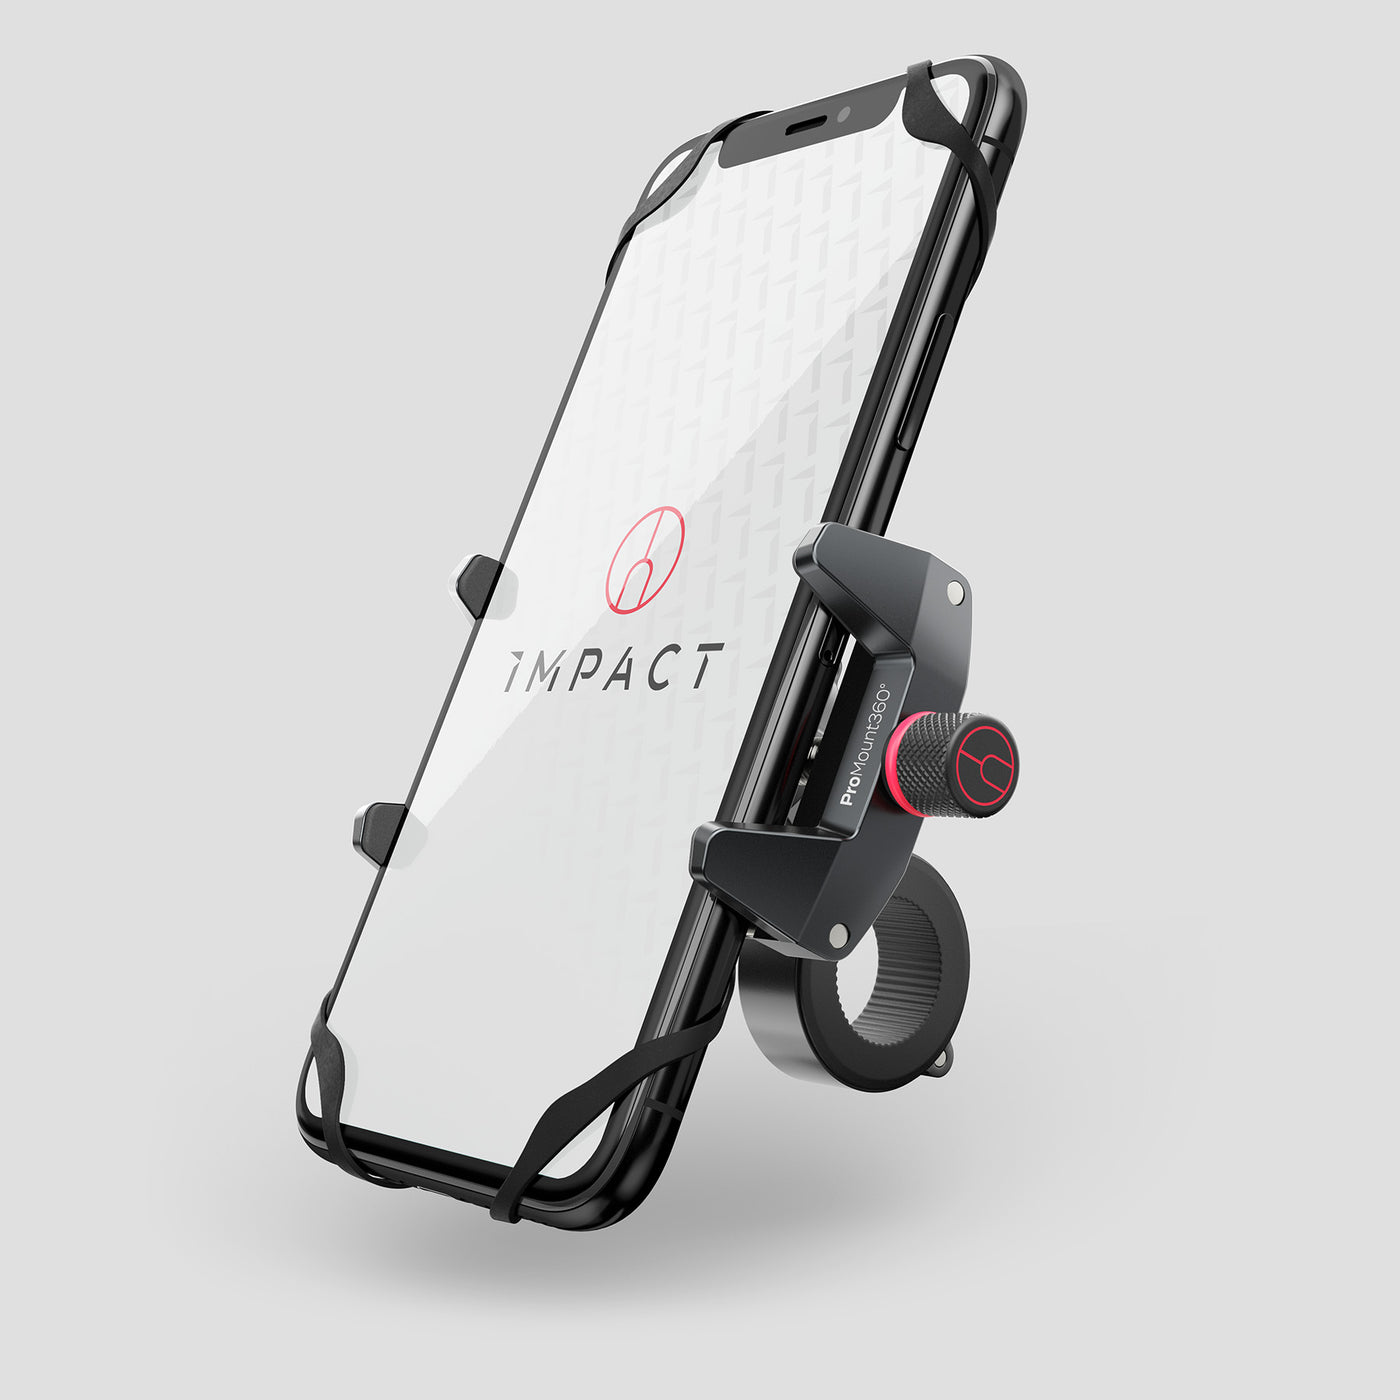 Smartphone-Halterung ProMount360 - sicheres Navigieren auf dem Fahrrad –  Impact Bike Accessories